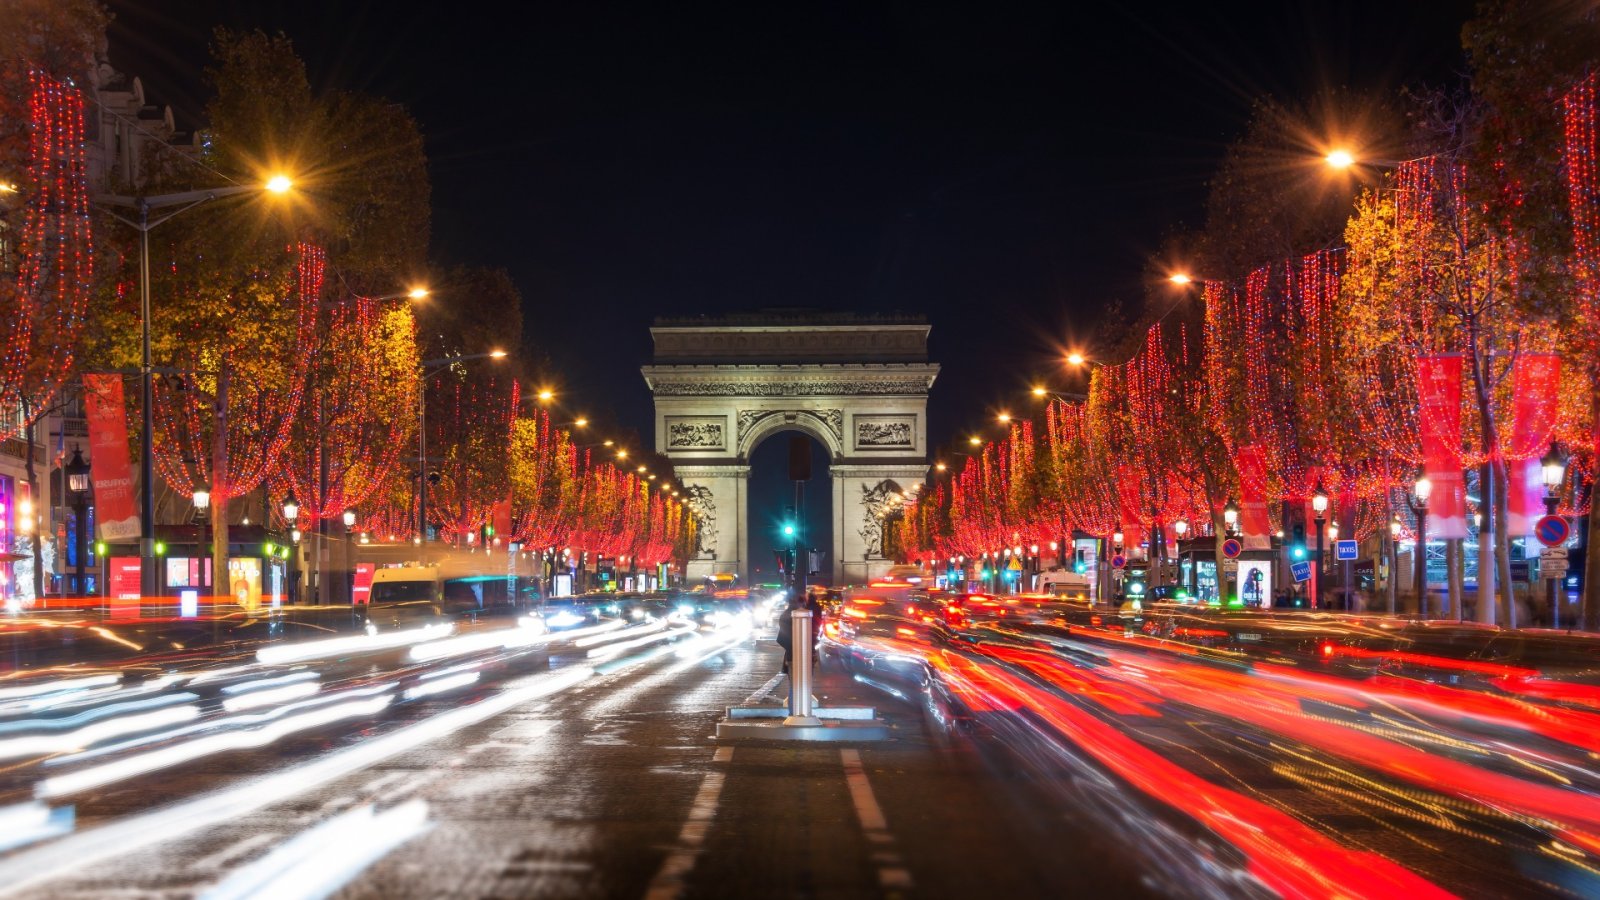 Ένας σύντομος οδηγός για ένα ονειρεμένο ταξίδι στο Παρίσι: η πόλη των φώτων και της αγάπης